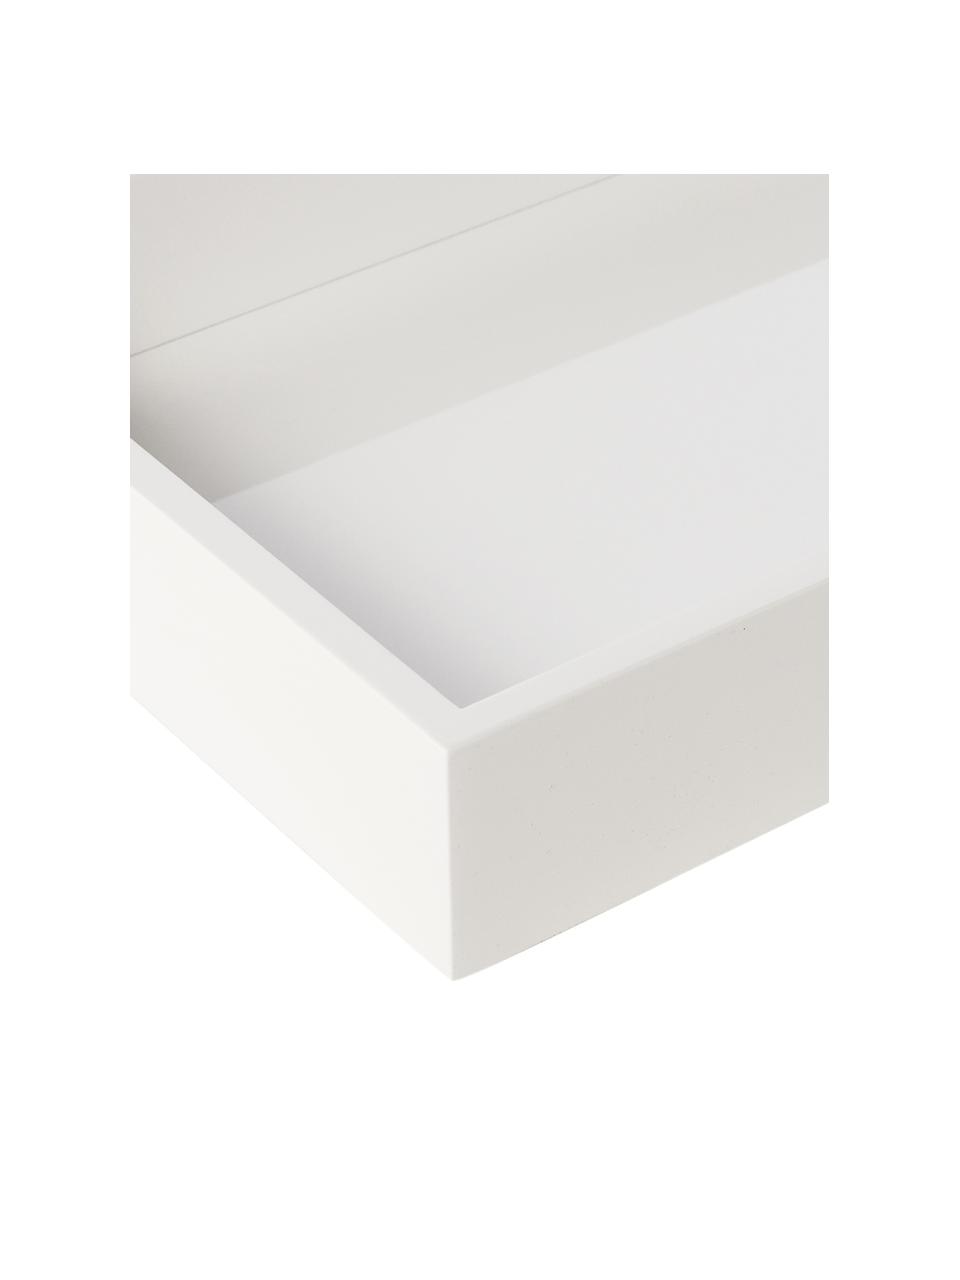 Hochglanz-Tablett Hayley in Weiss, Tablett: Mitteldichte Holzfaserpla, Unterseite: Samtbezug, Weiss, B 33 x T 24 cm